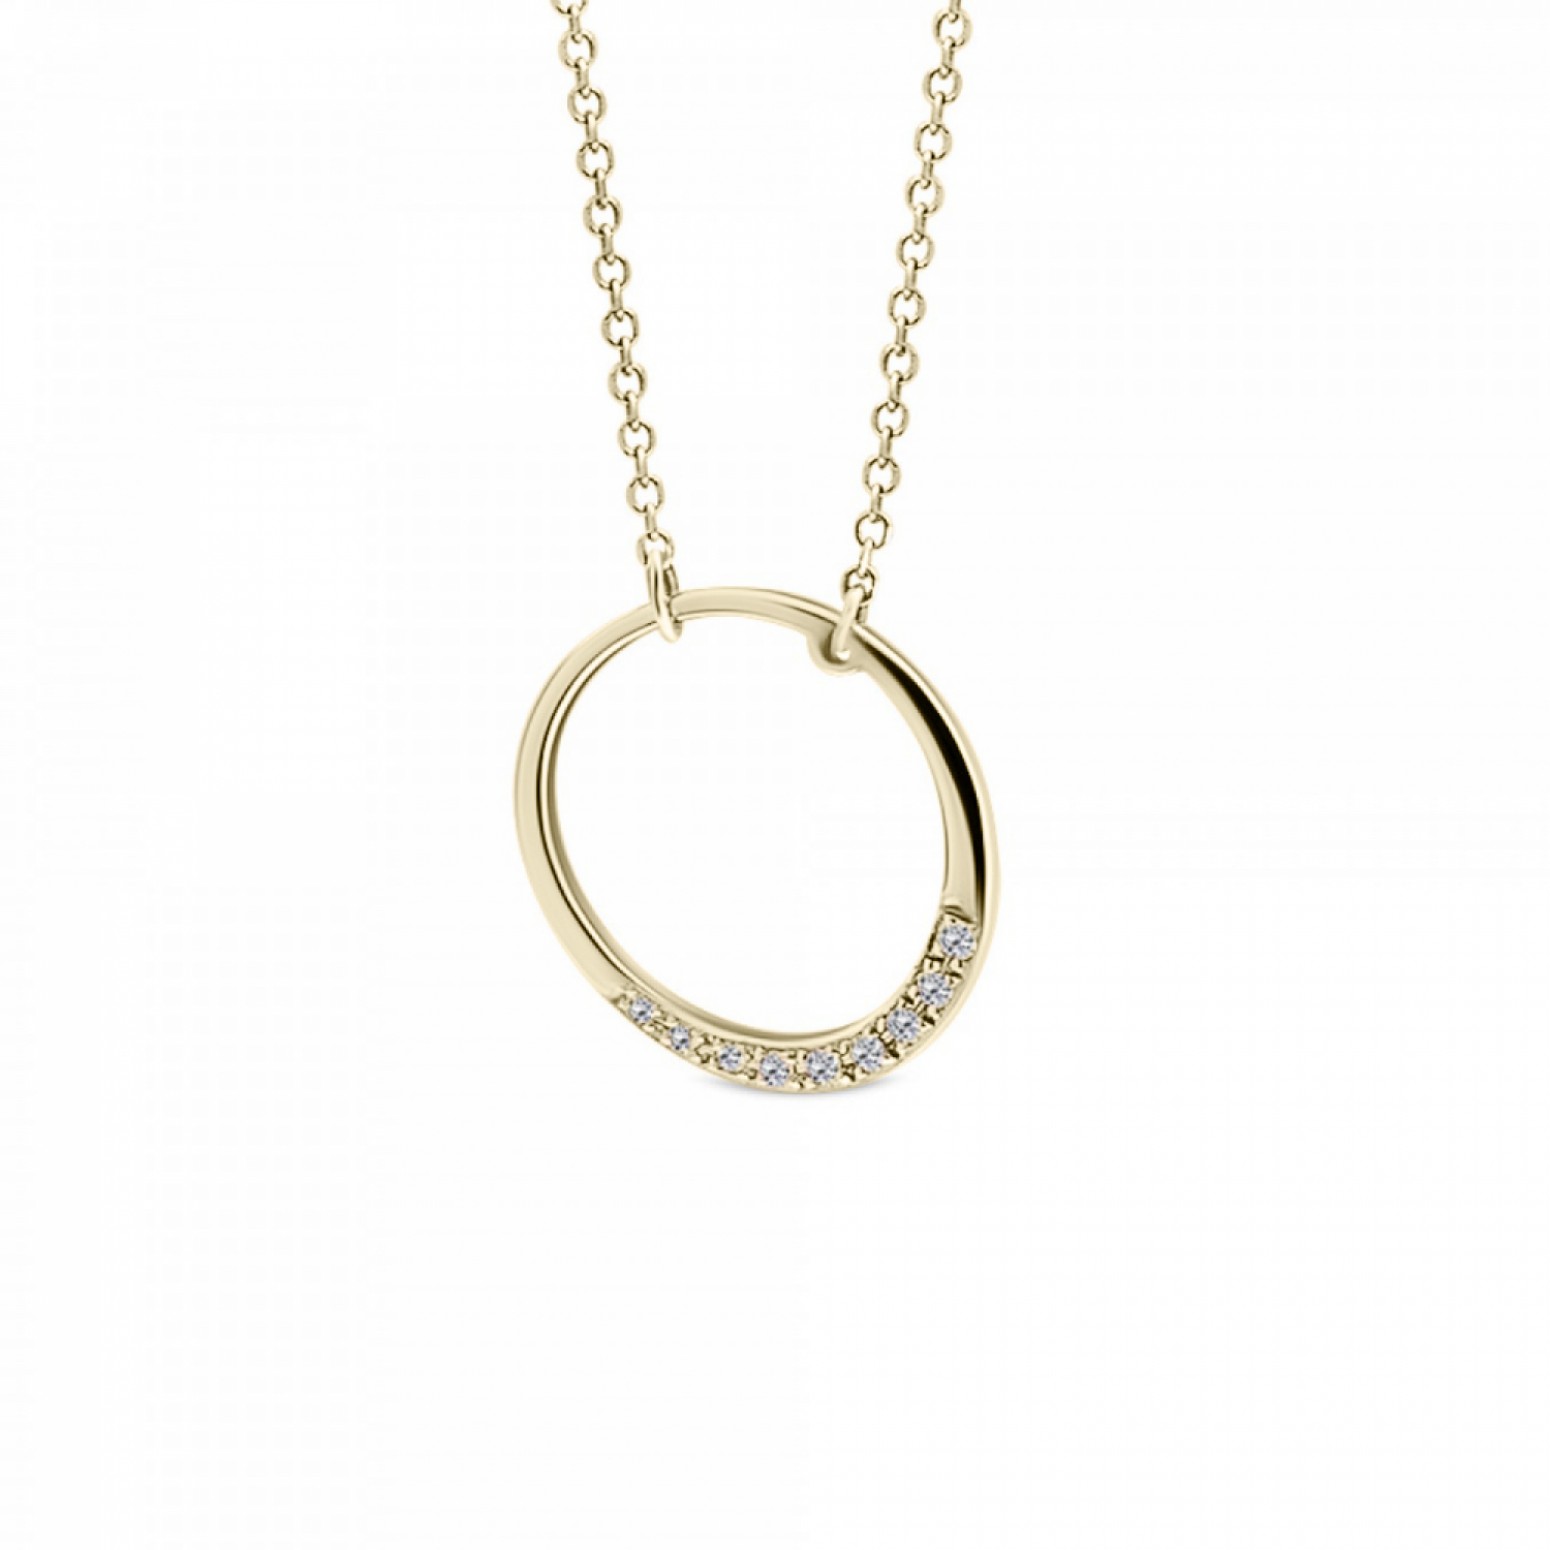 Round necklace, Κ14 gold with diamonds 0.04ct, VS2, H ko6016 NECKLACES Κοσμηματα - chrilia.gr